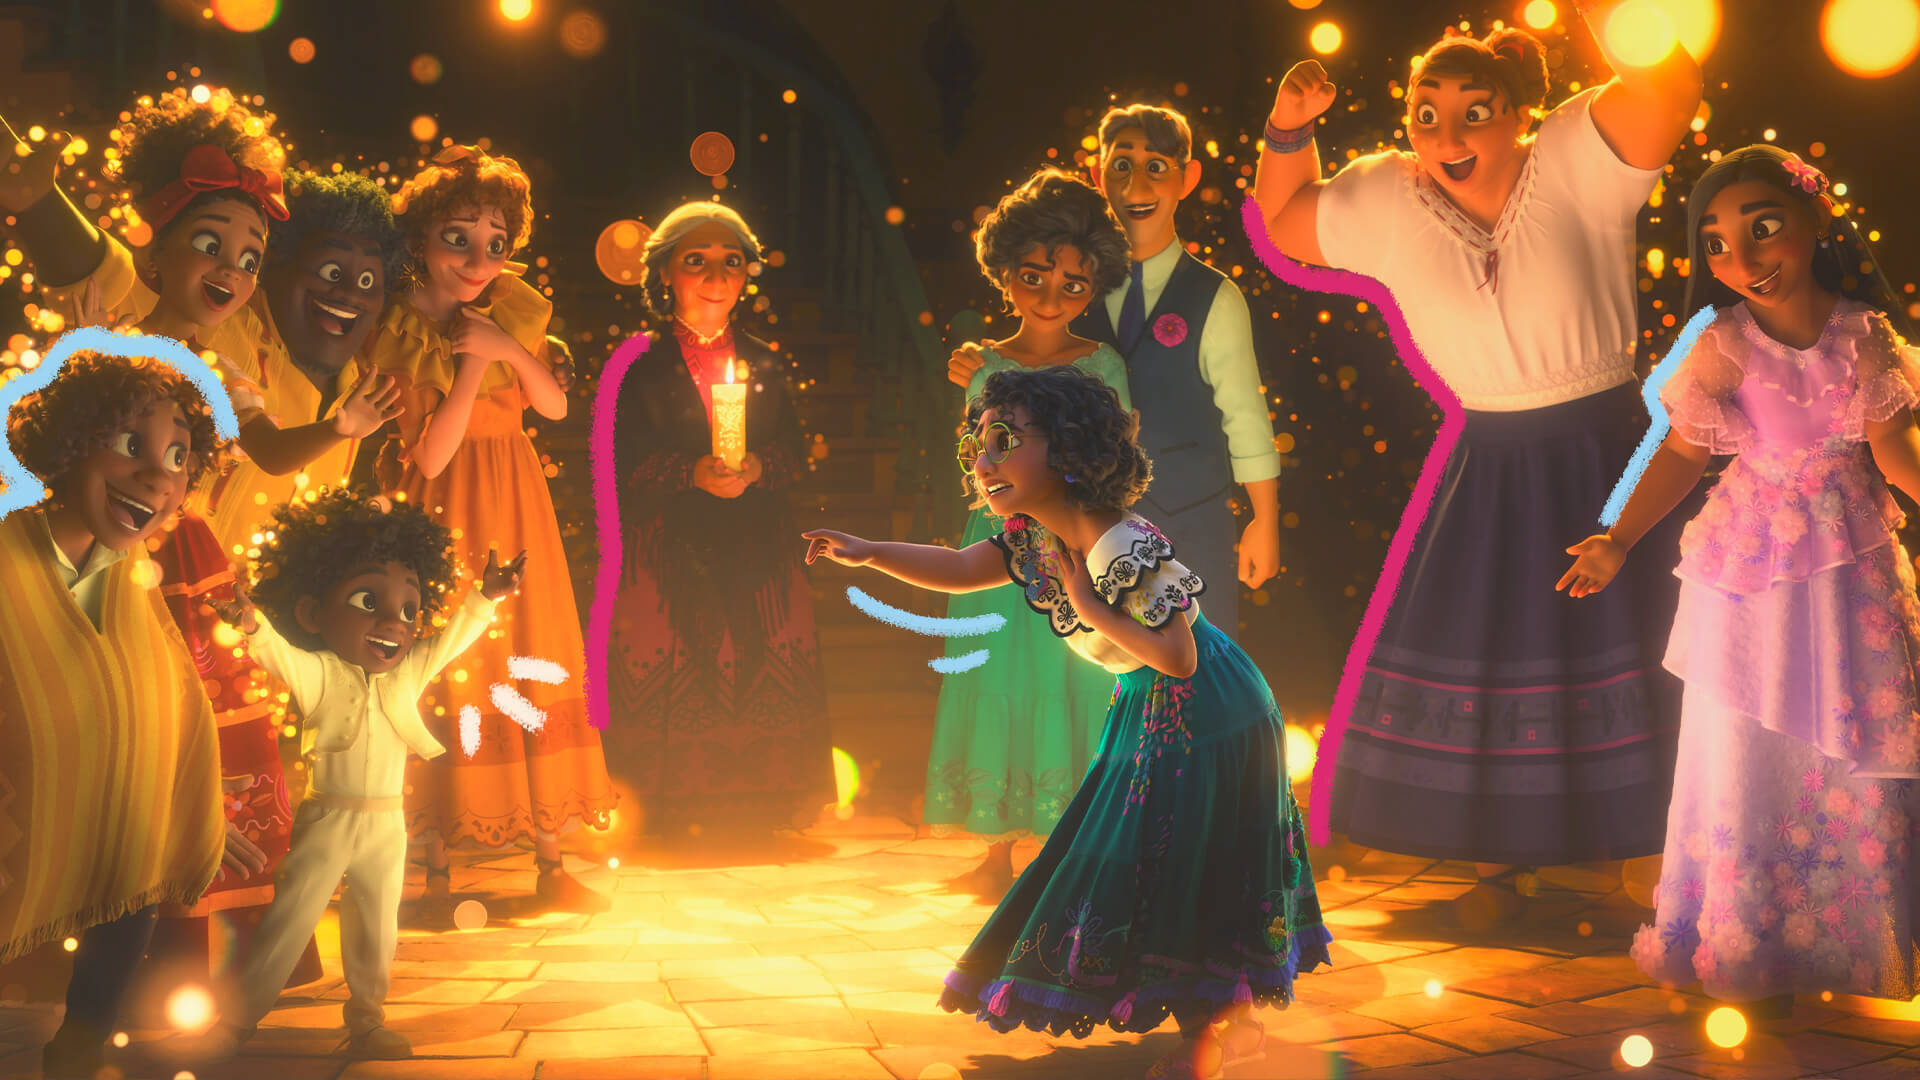 Cena do filme "Encanto", da Disney, em que a personagem Mirabel canta perante os demais